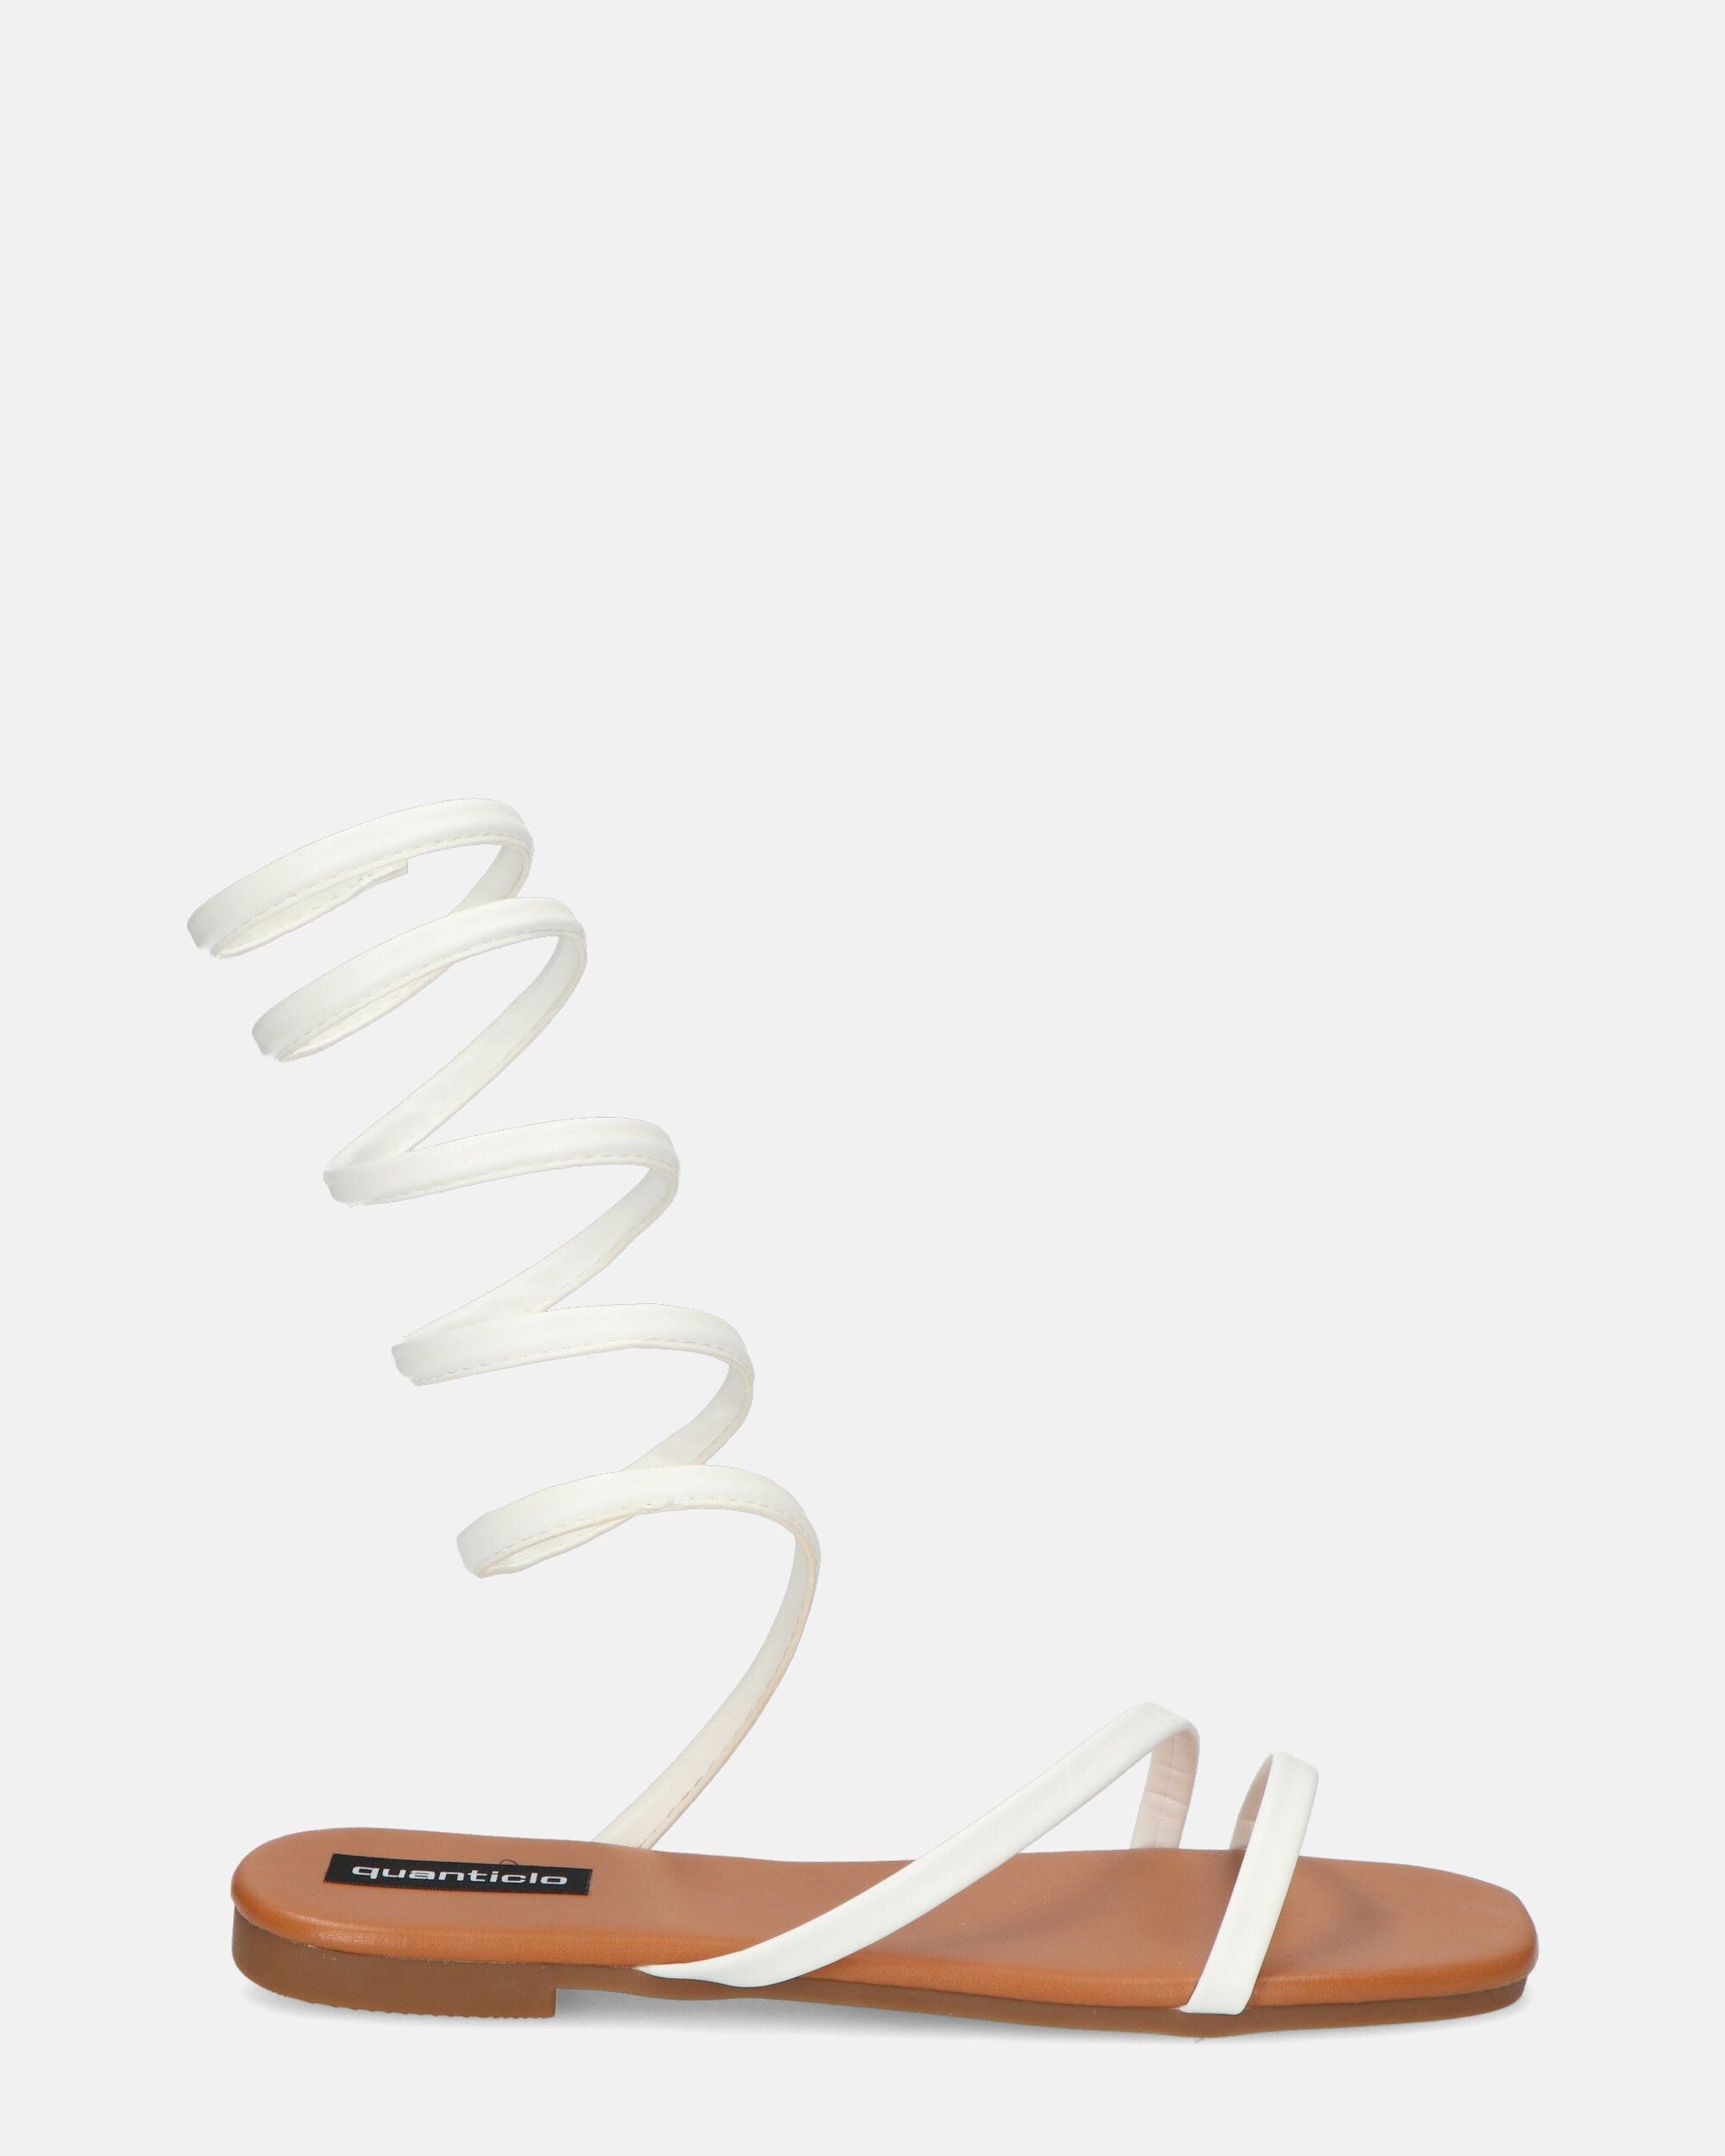 SIENNA - sandali con suola marrone e spirale bianca